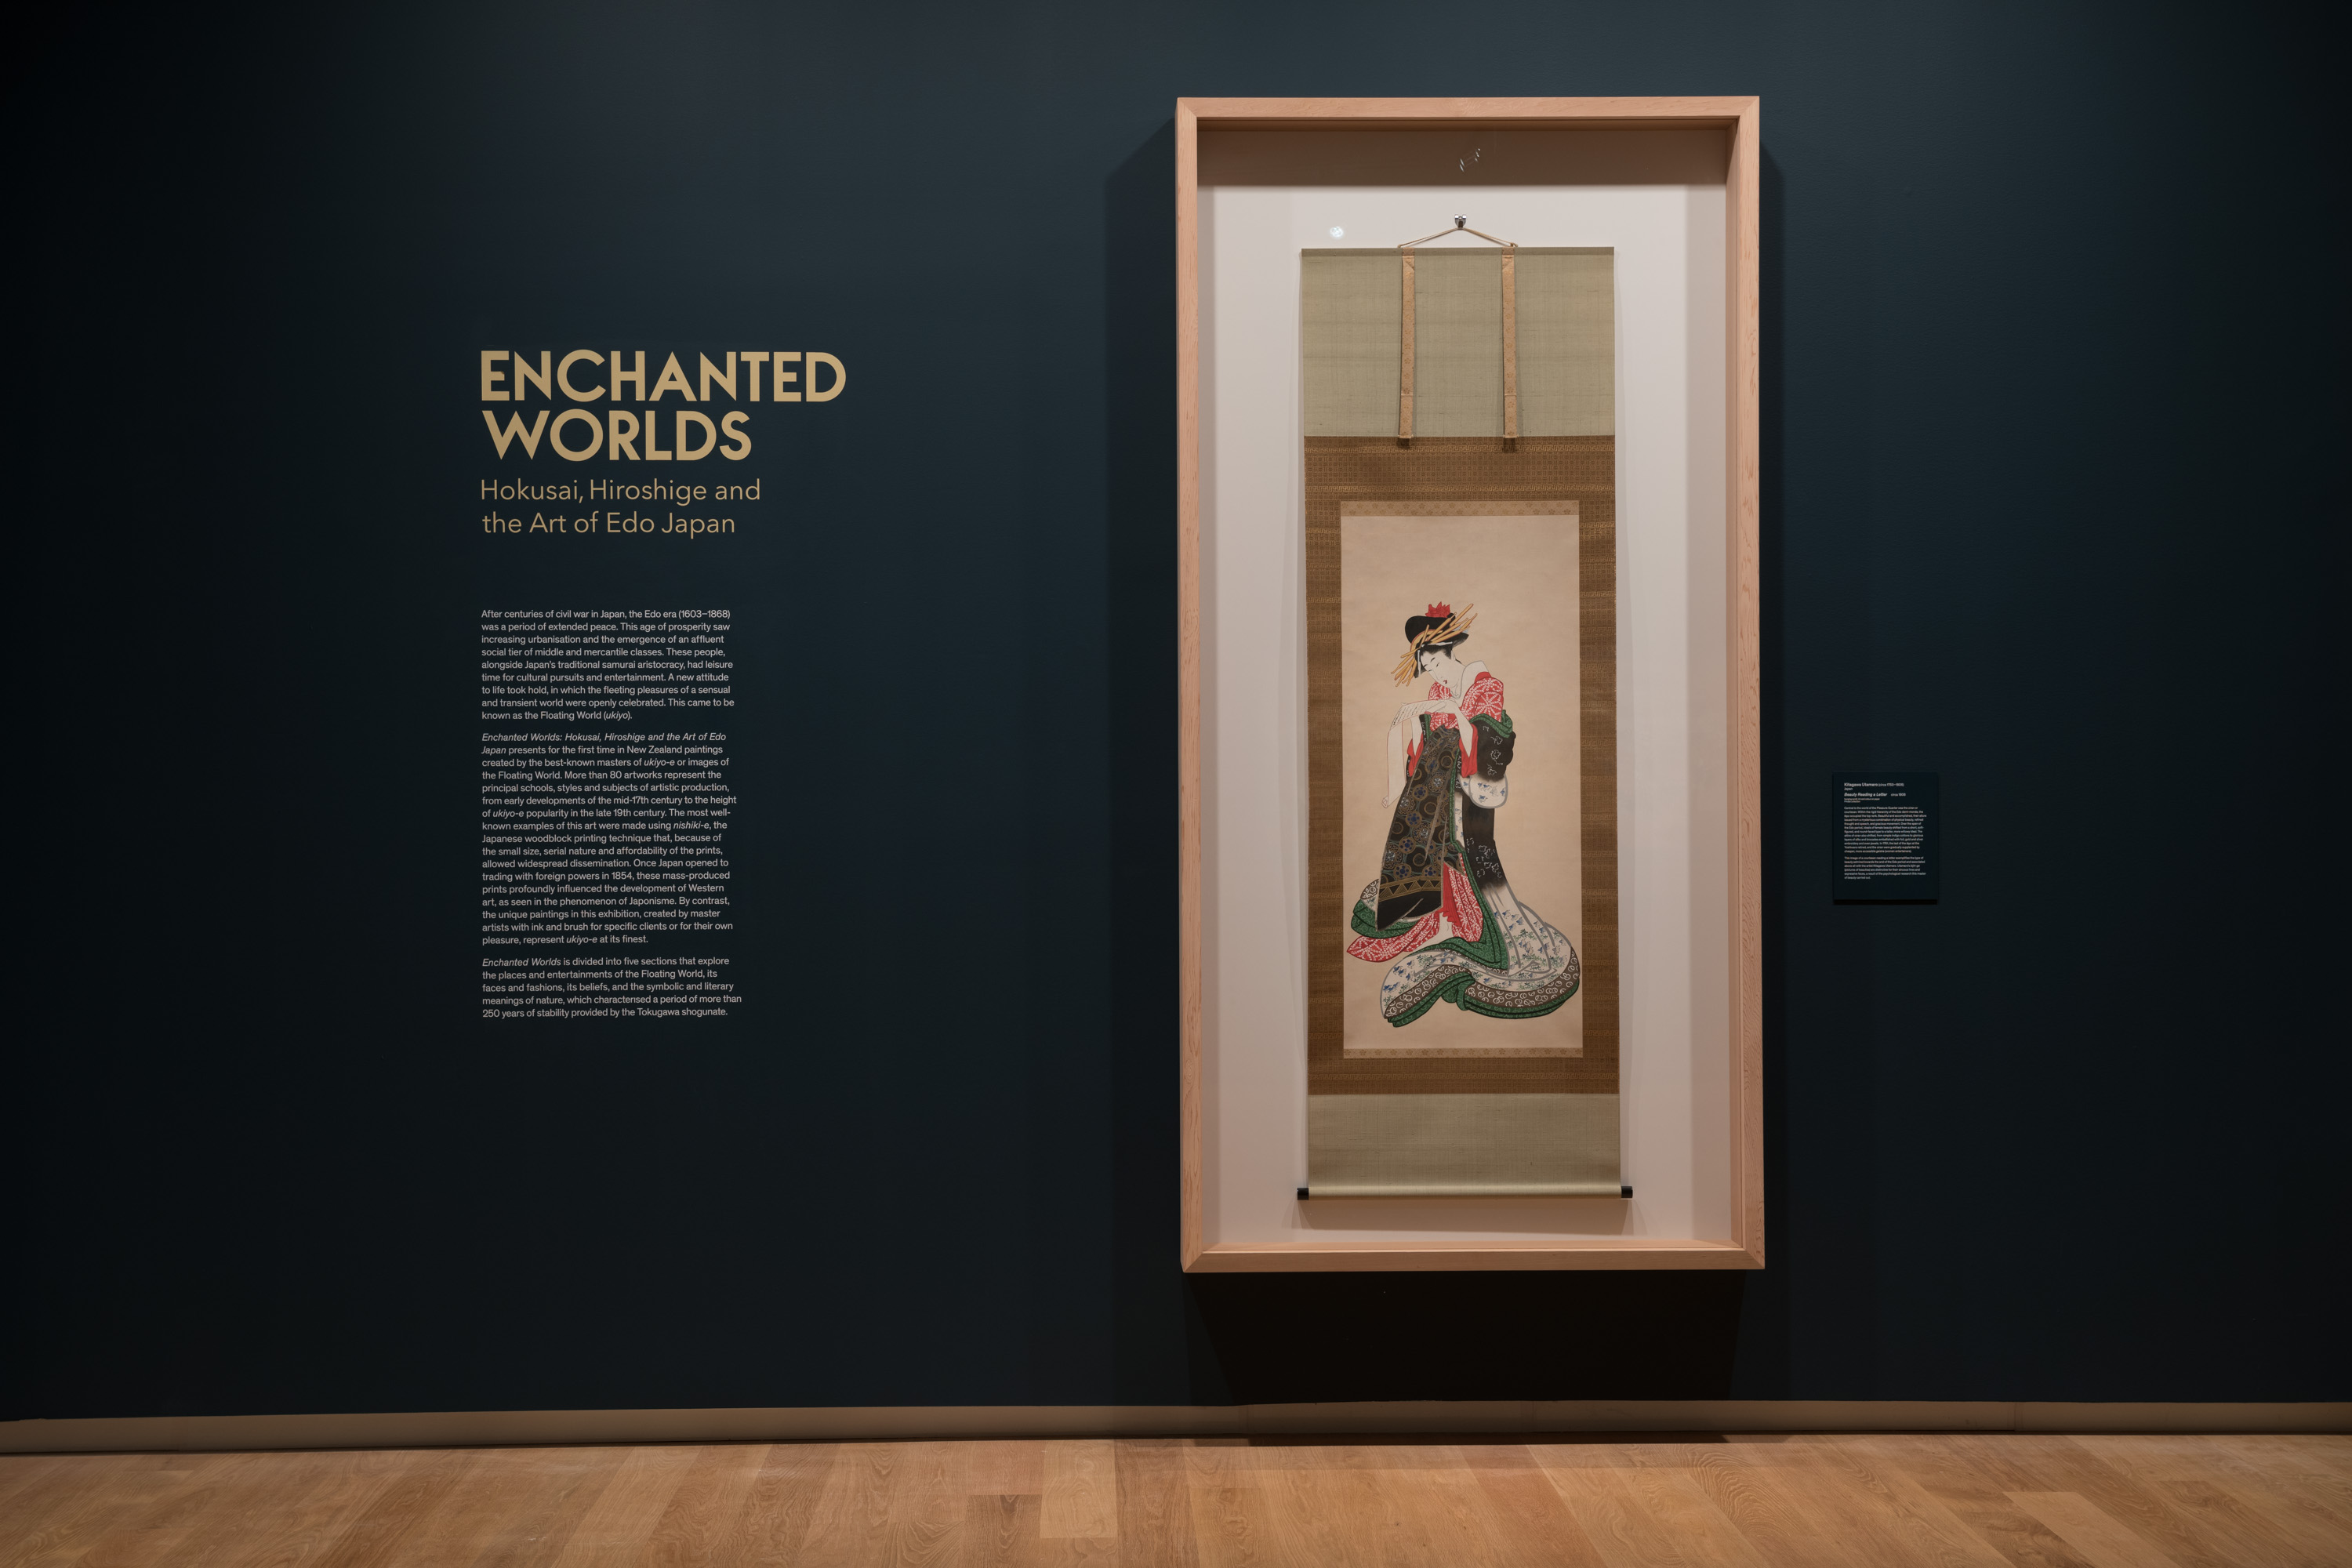 <p><em>Enchanted Worlds: Hokusai, Hiroshige and the Art of Edo Japan </em>(installation details), Auckland Art Gallery Toi o Tāmaki, 2020</p>